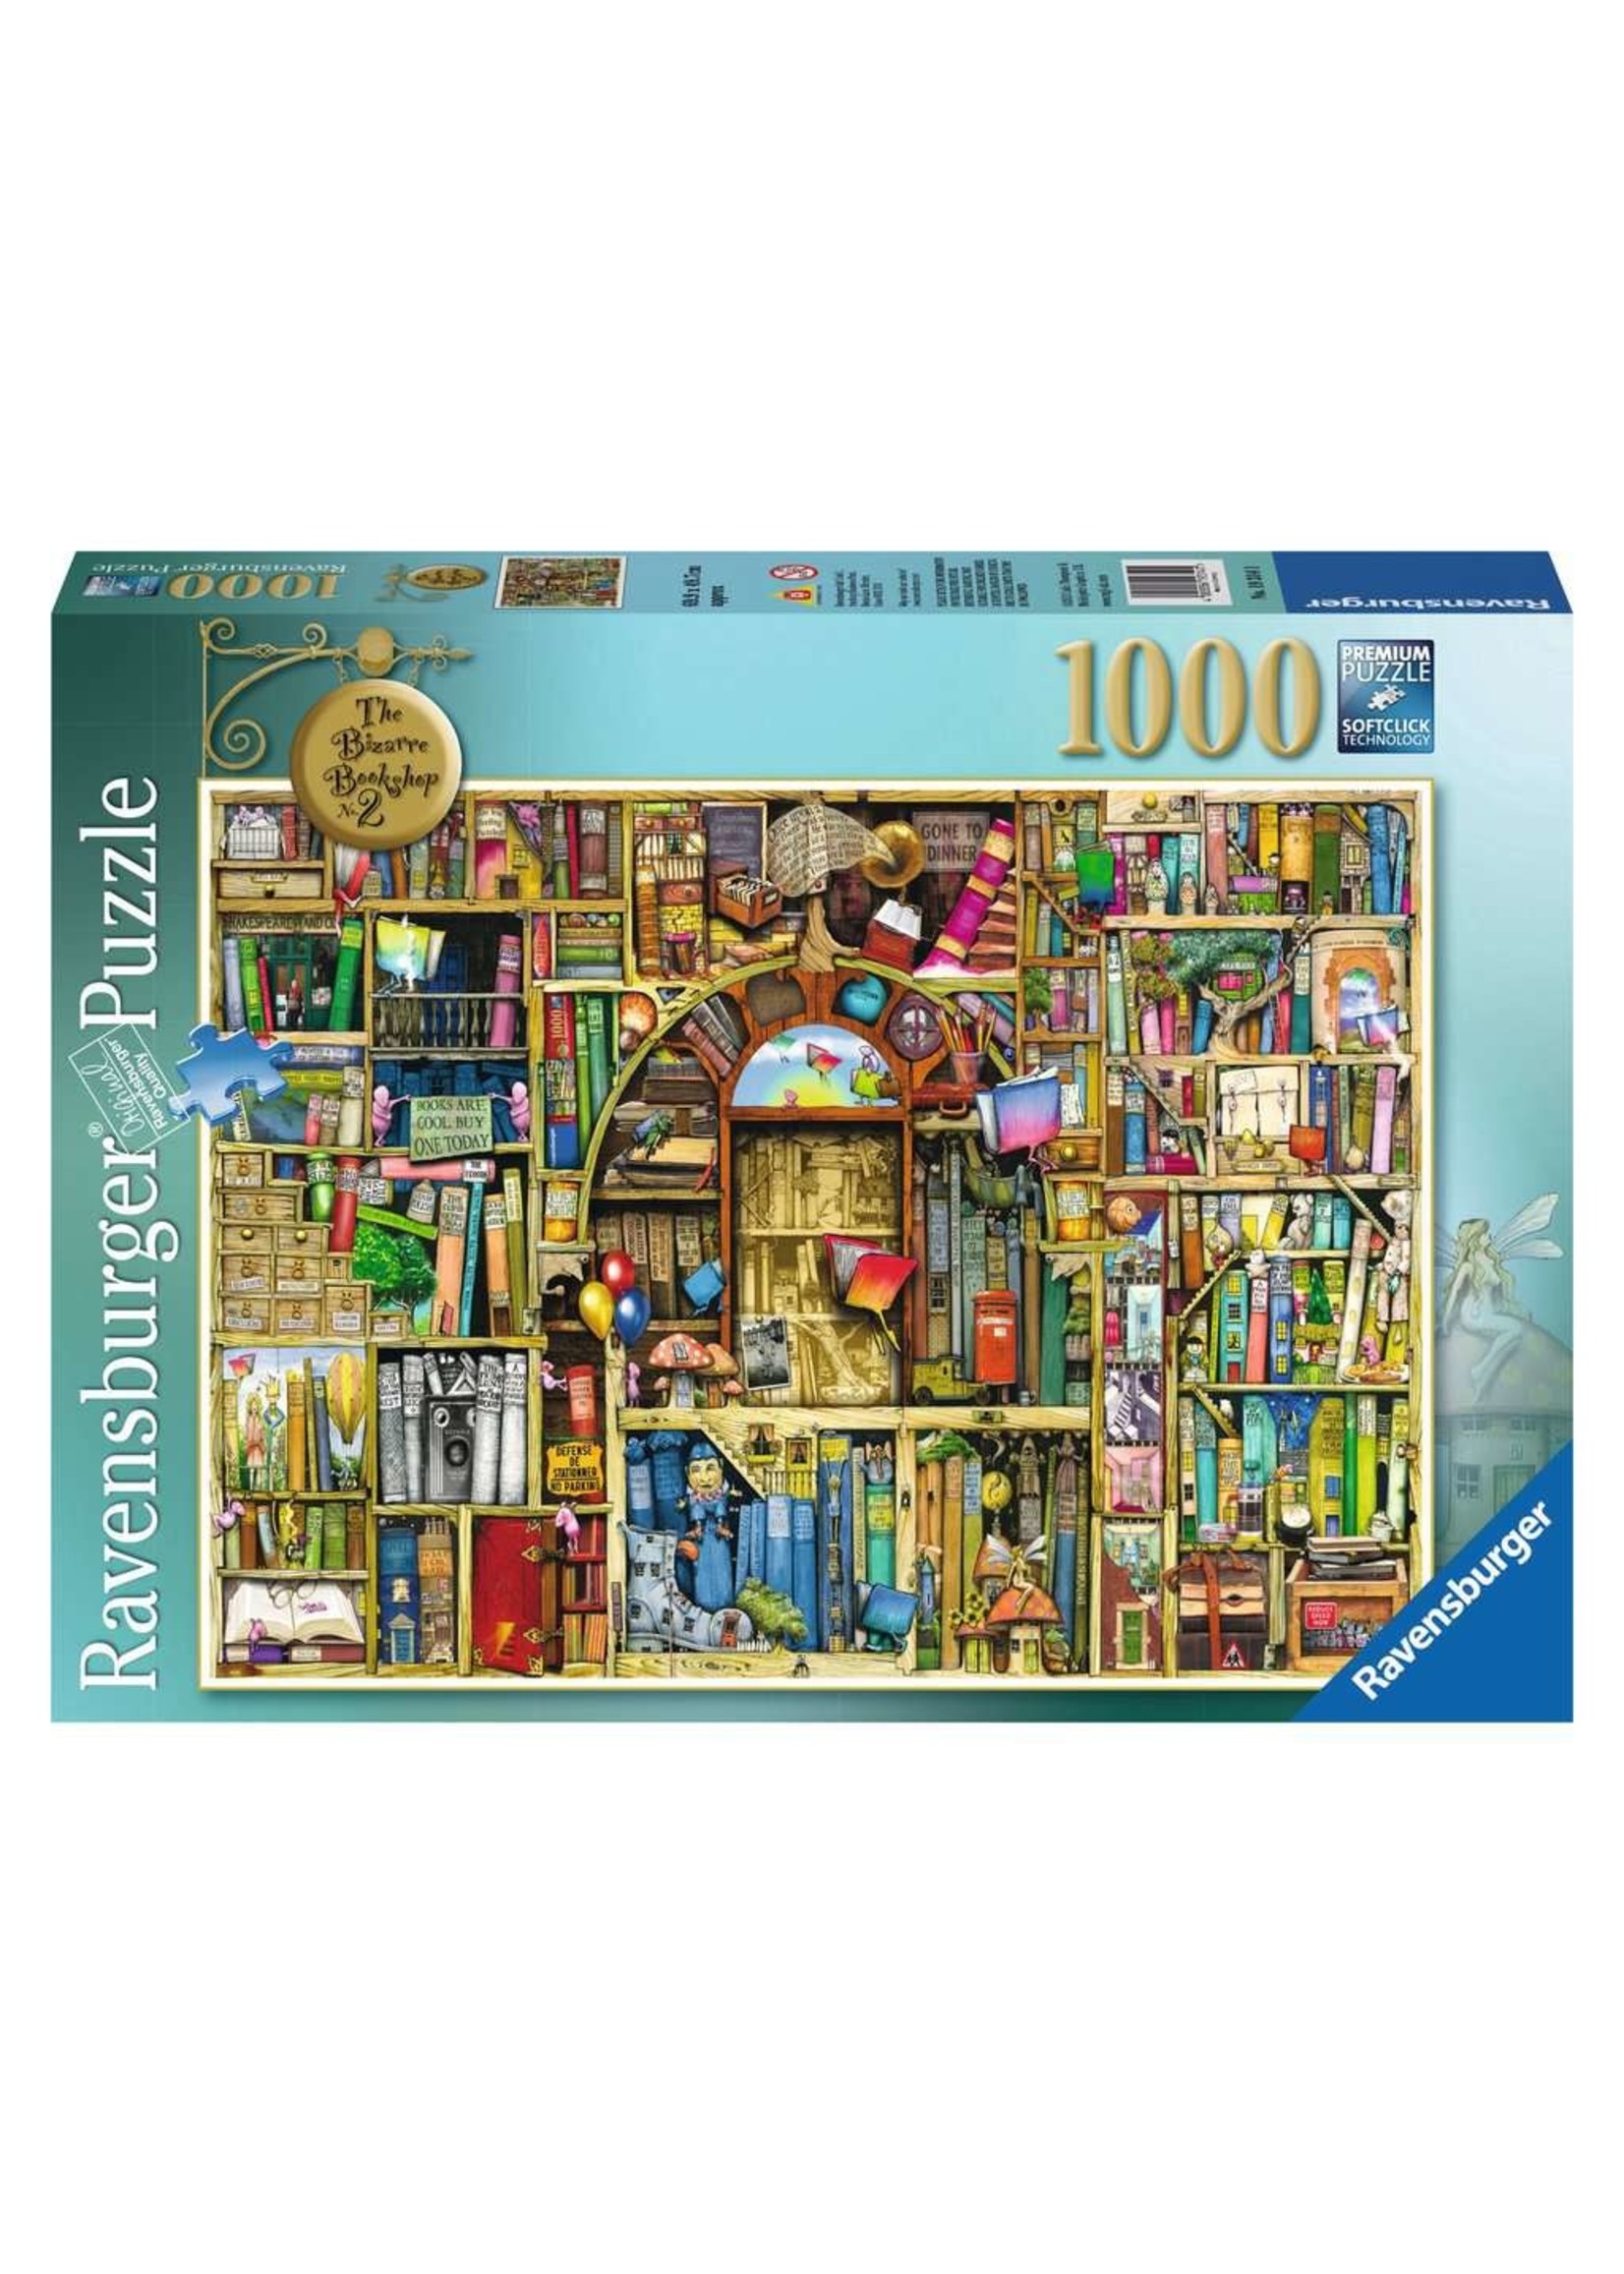 Ravensburger Puzzle Ravensburger 1000 pcs - The bizarre bookshop 2